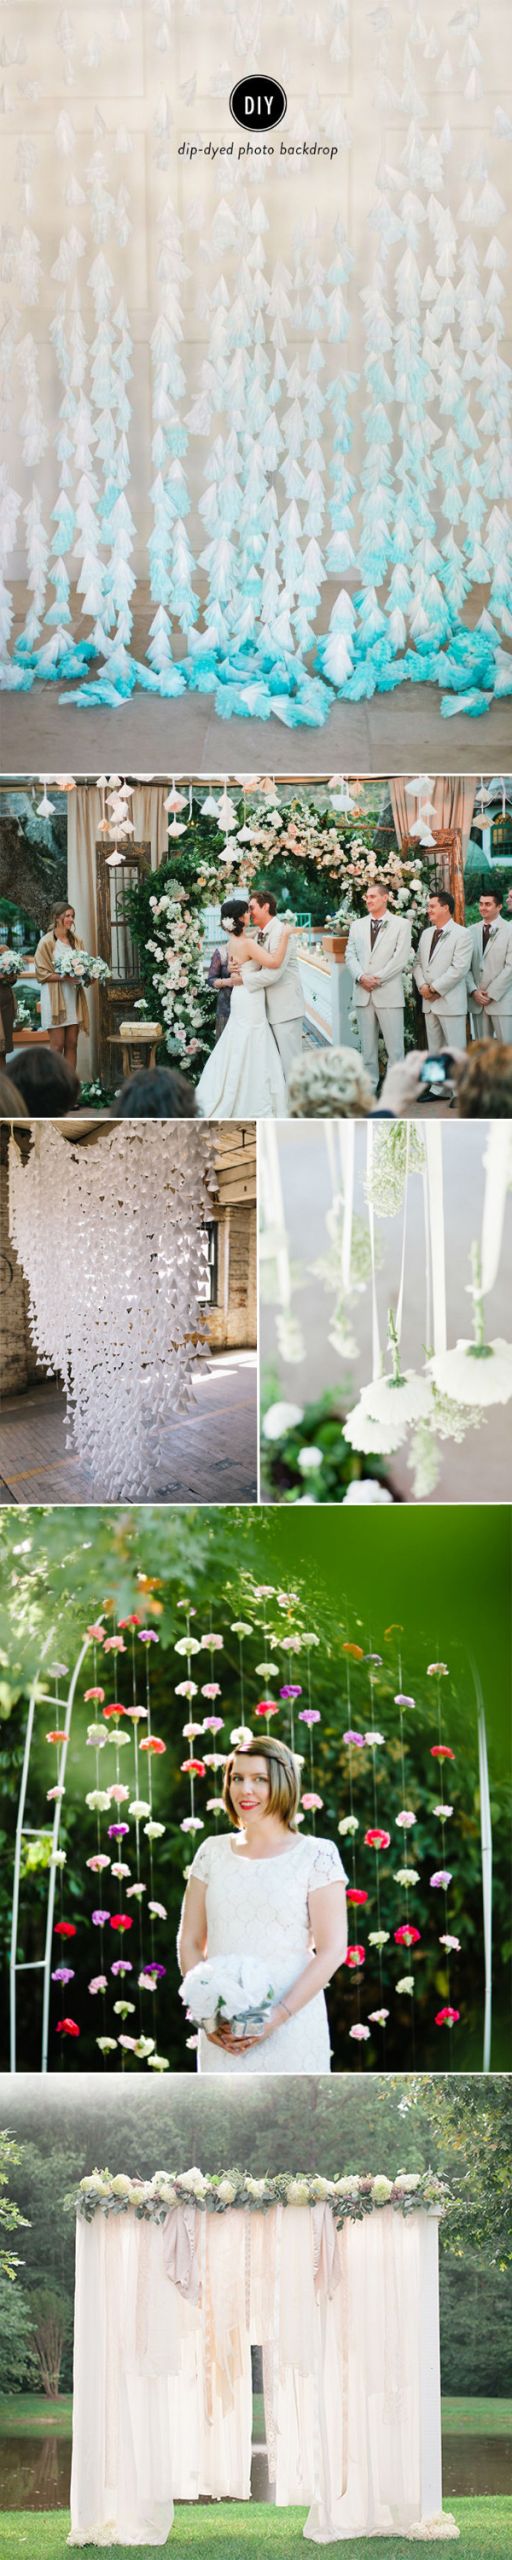 Wedding Decoration Ideas DIY
 7 Charming DIY Wedding Decor Ideas We Love